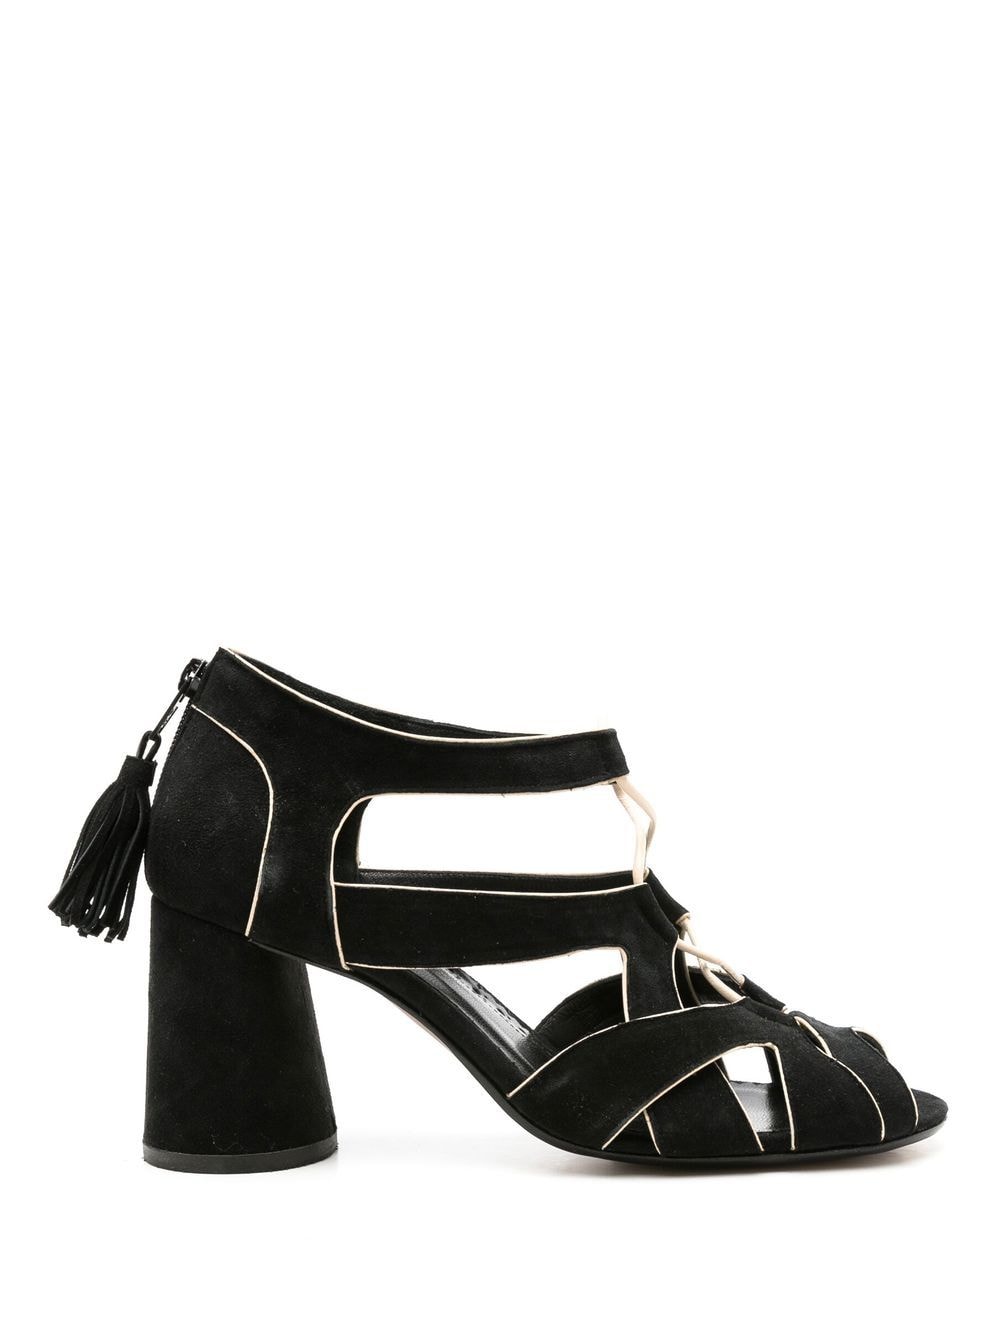 Sarah Chofakian Taylor 65mm cone-heeled sandals - Black von Sarah Chofakian